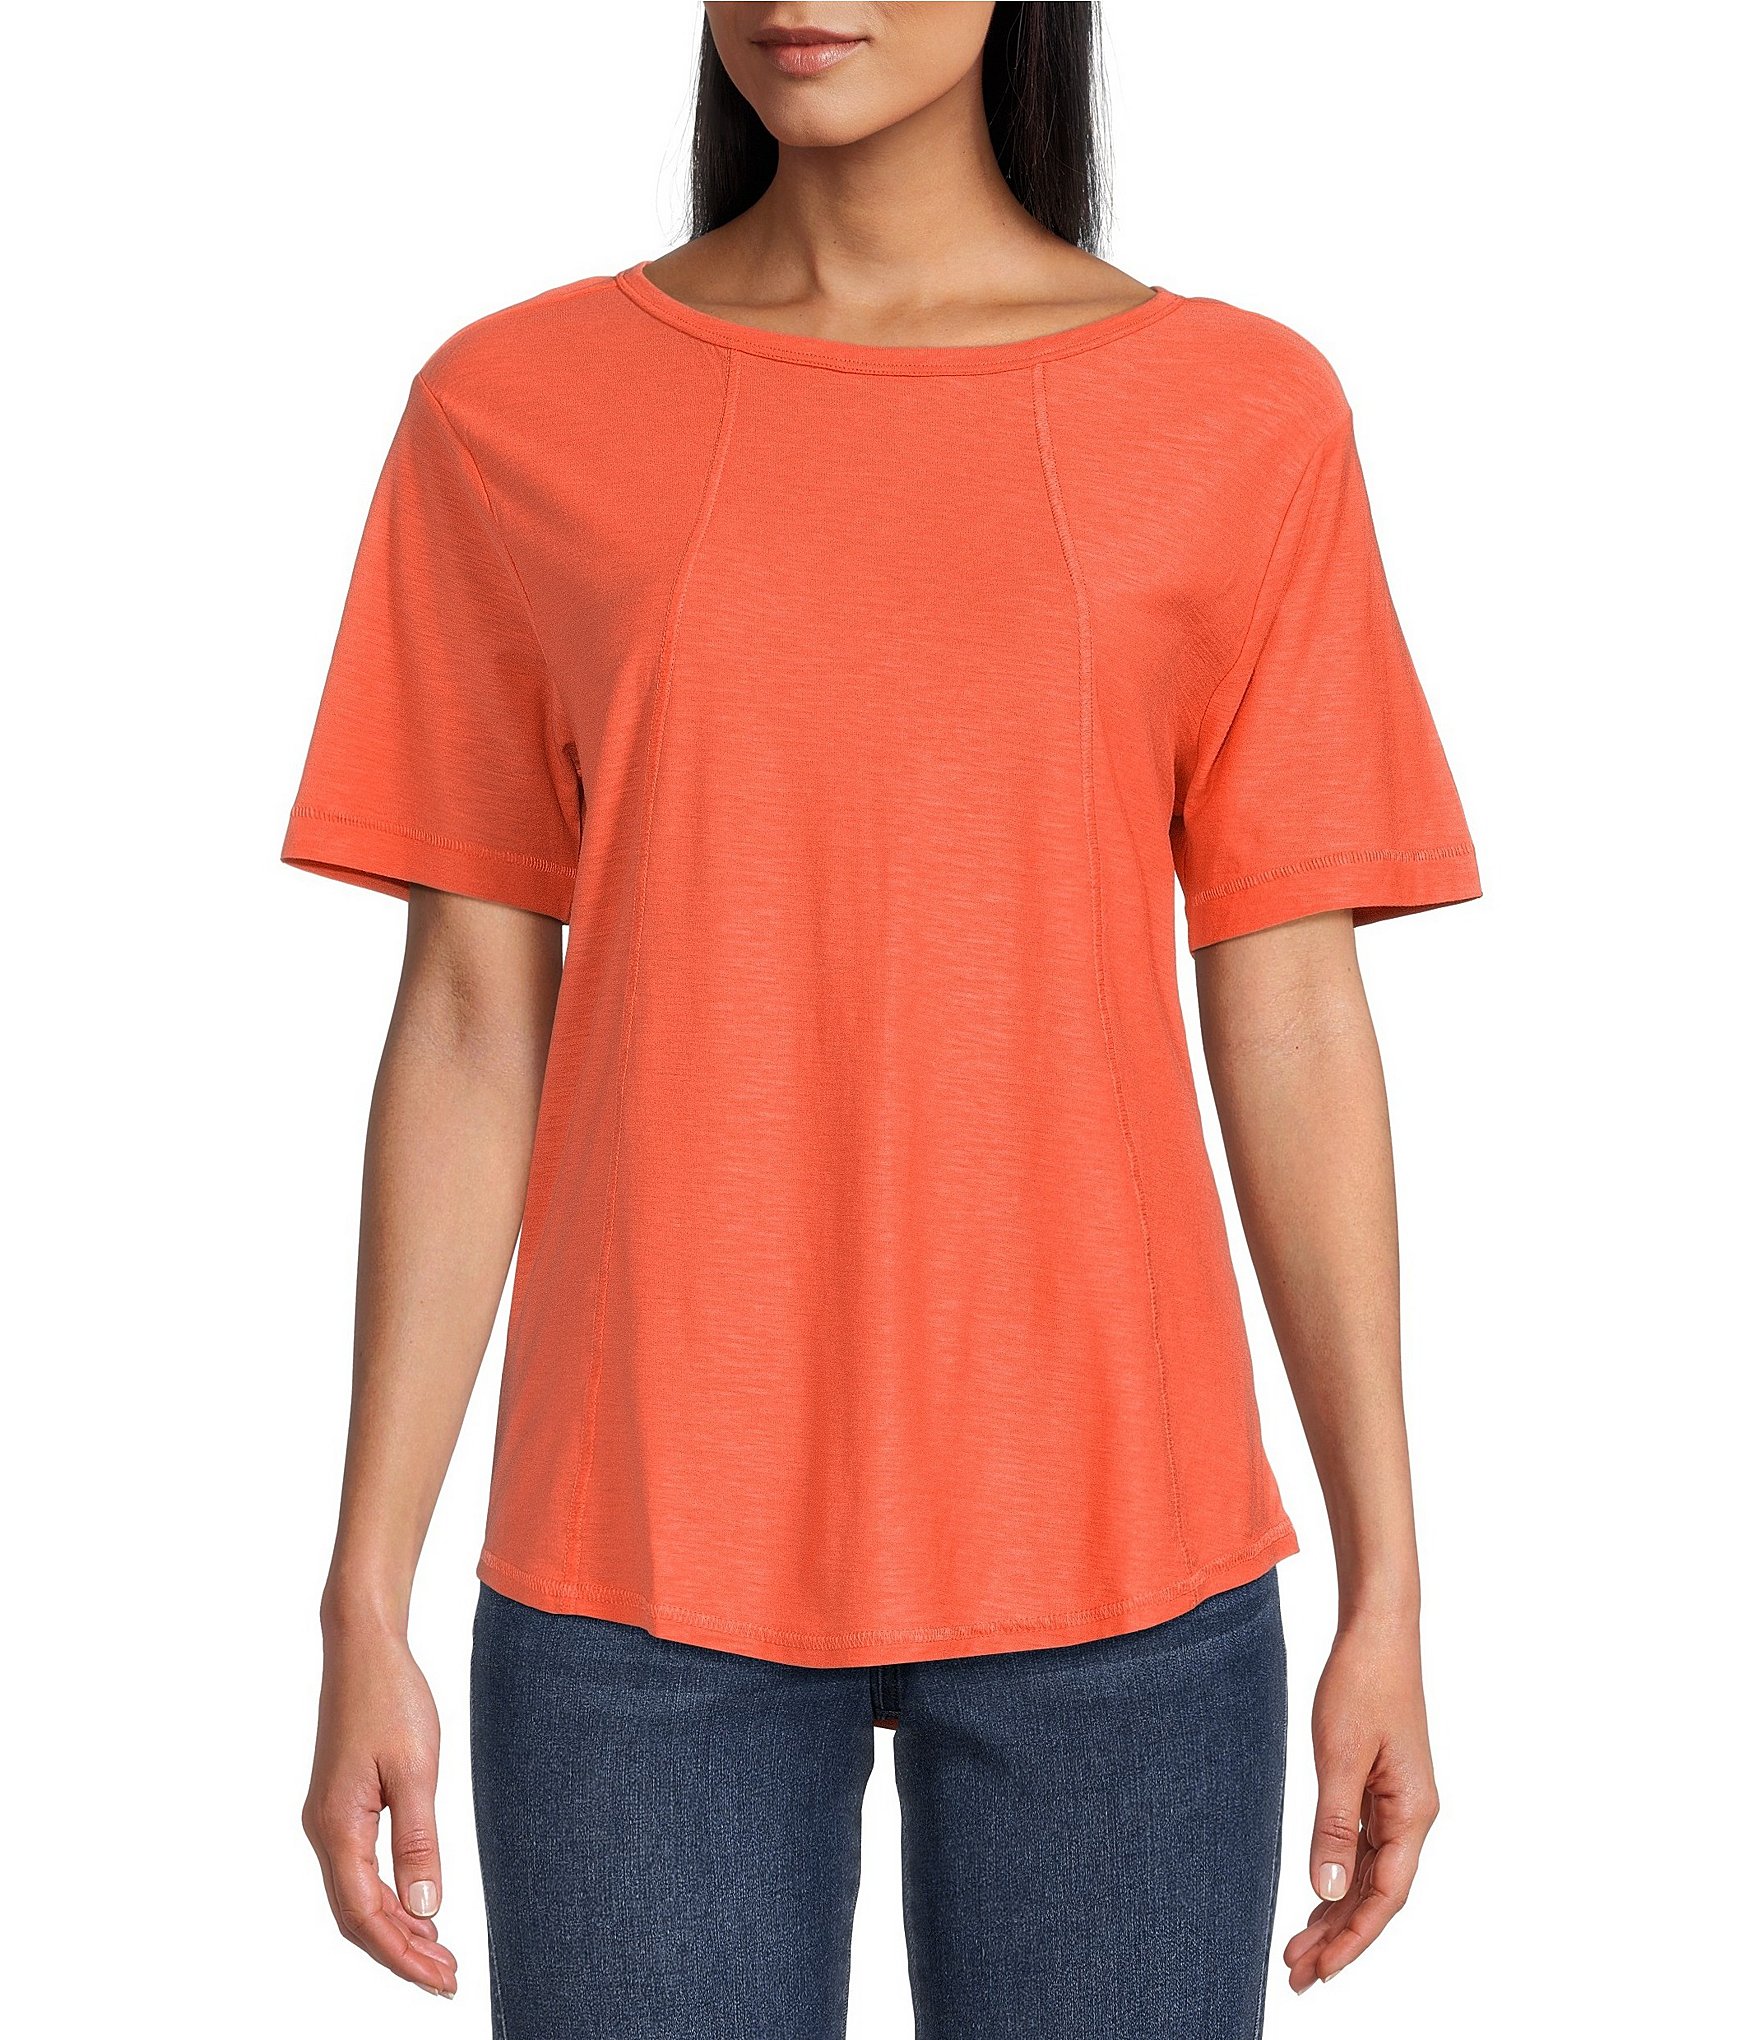 Orange Women's Knit Tops & Tees | Dillard's